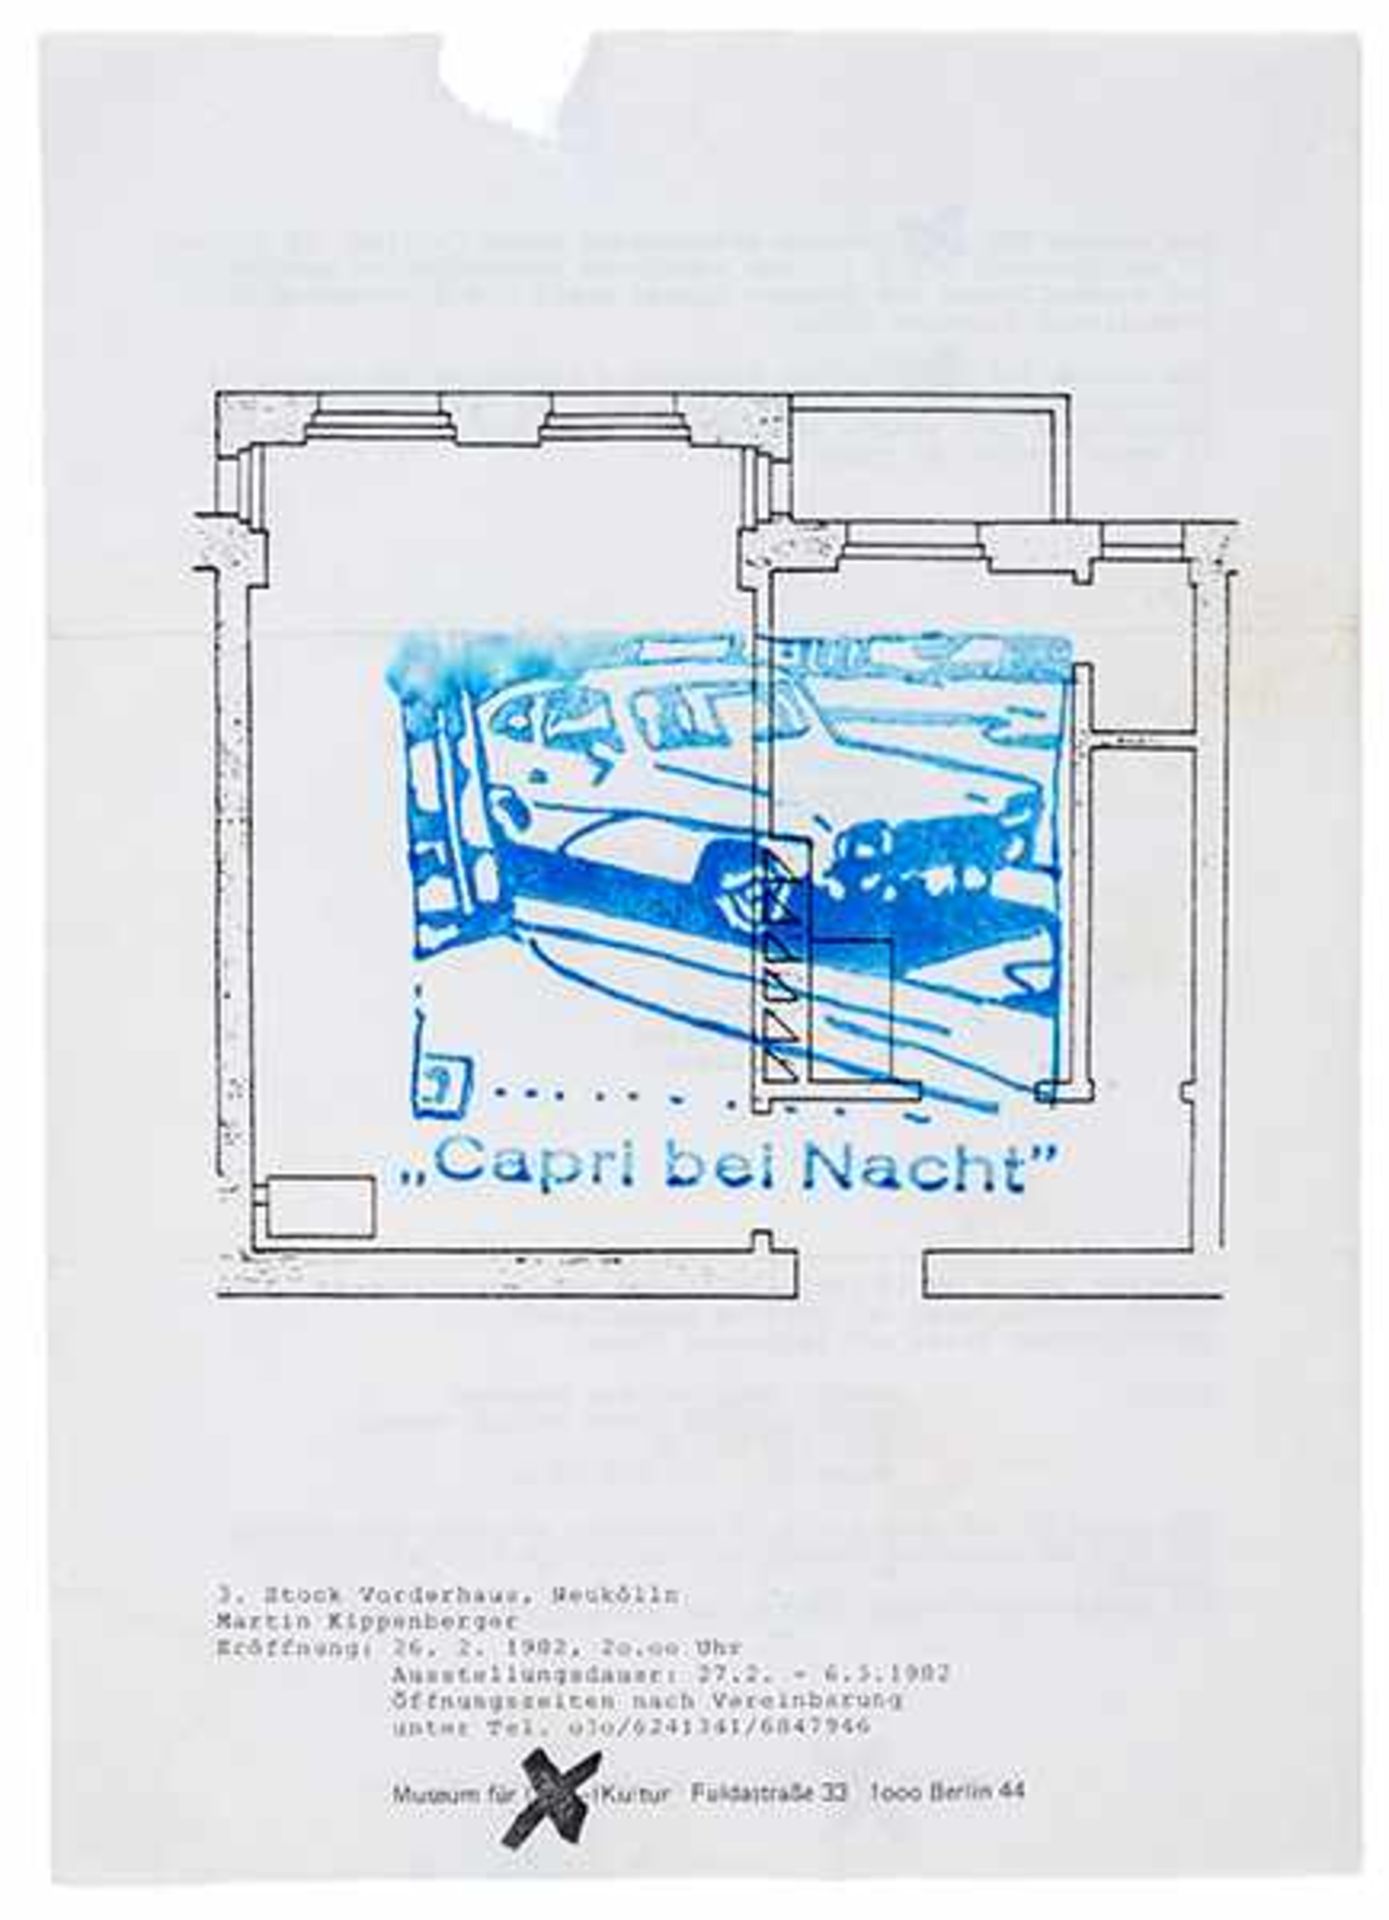 Kippenberger, Martin. Capri bei Nacht. Flyer mit Ankündigung der Ausstellung in Neukölln, 27.2 - 6.